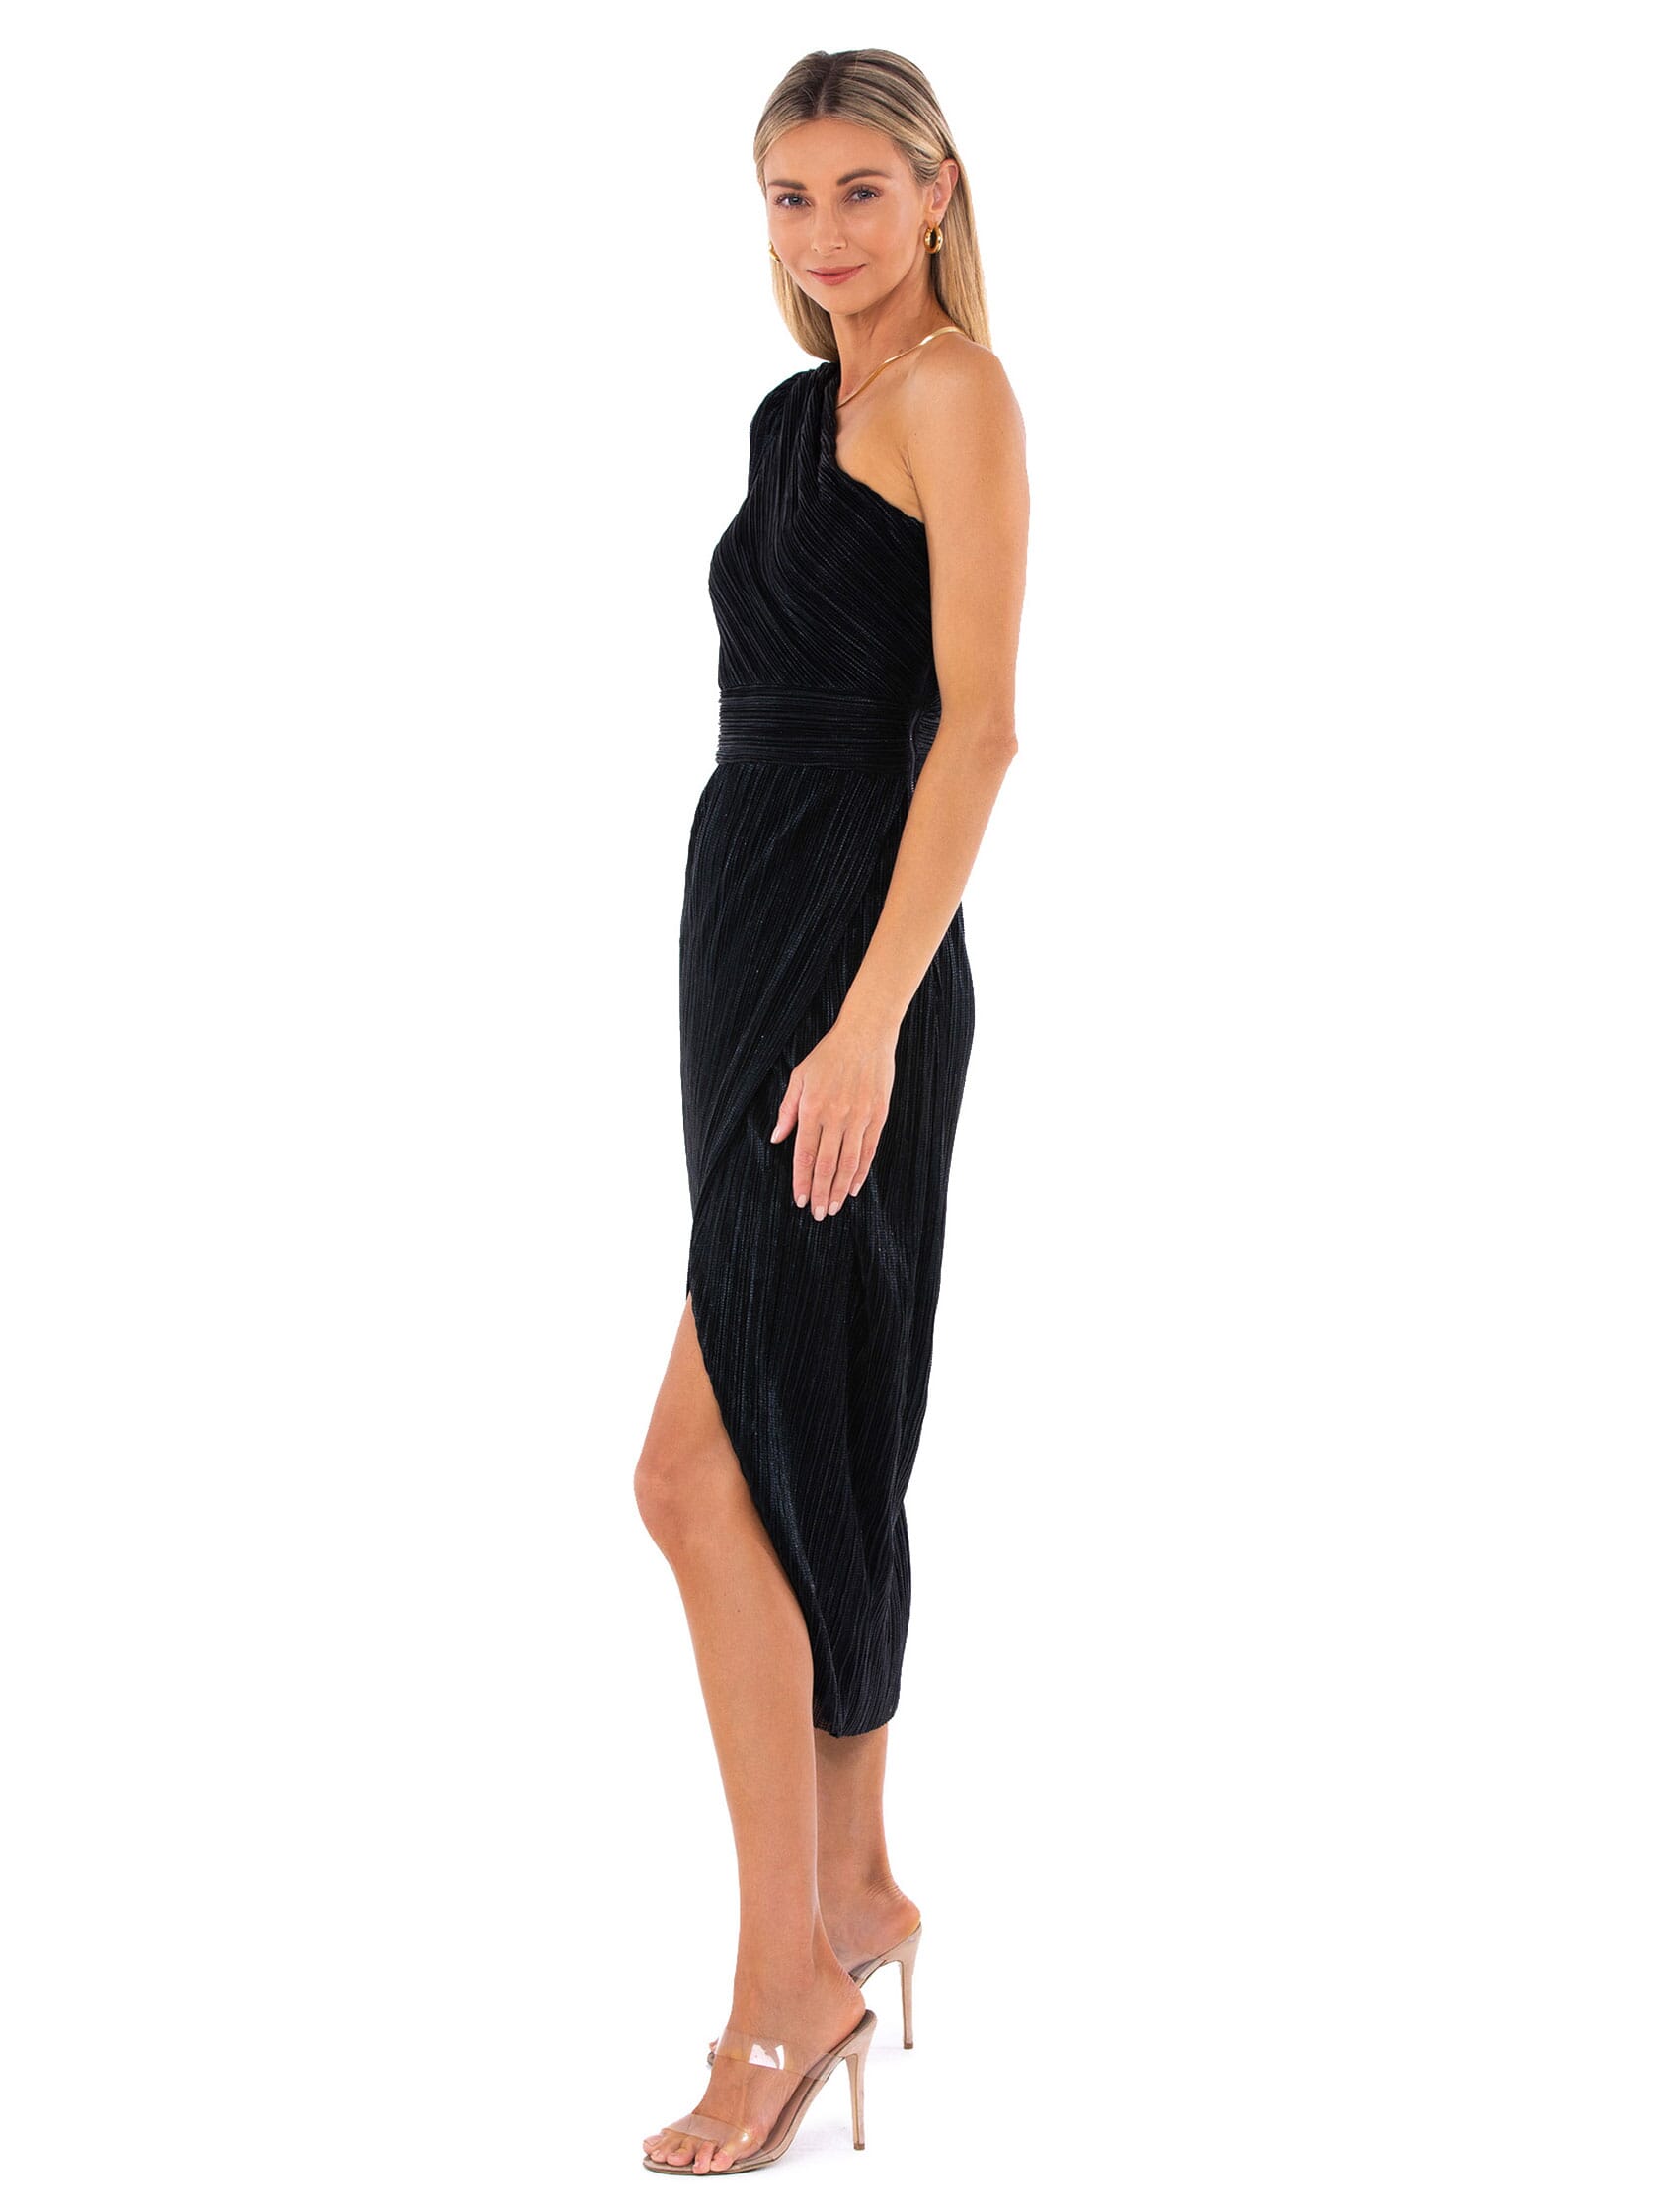 Saylor | Alora Dress in Black | FashionPass